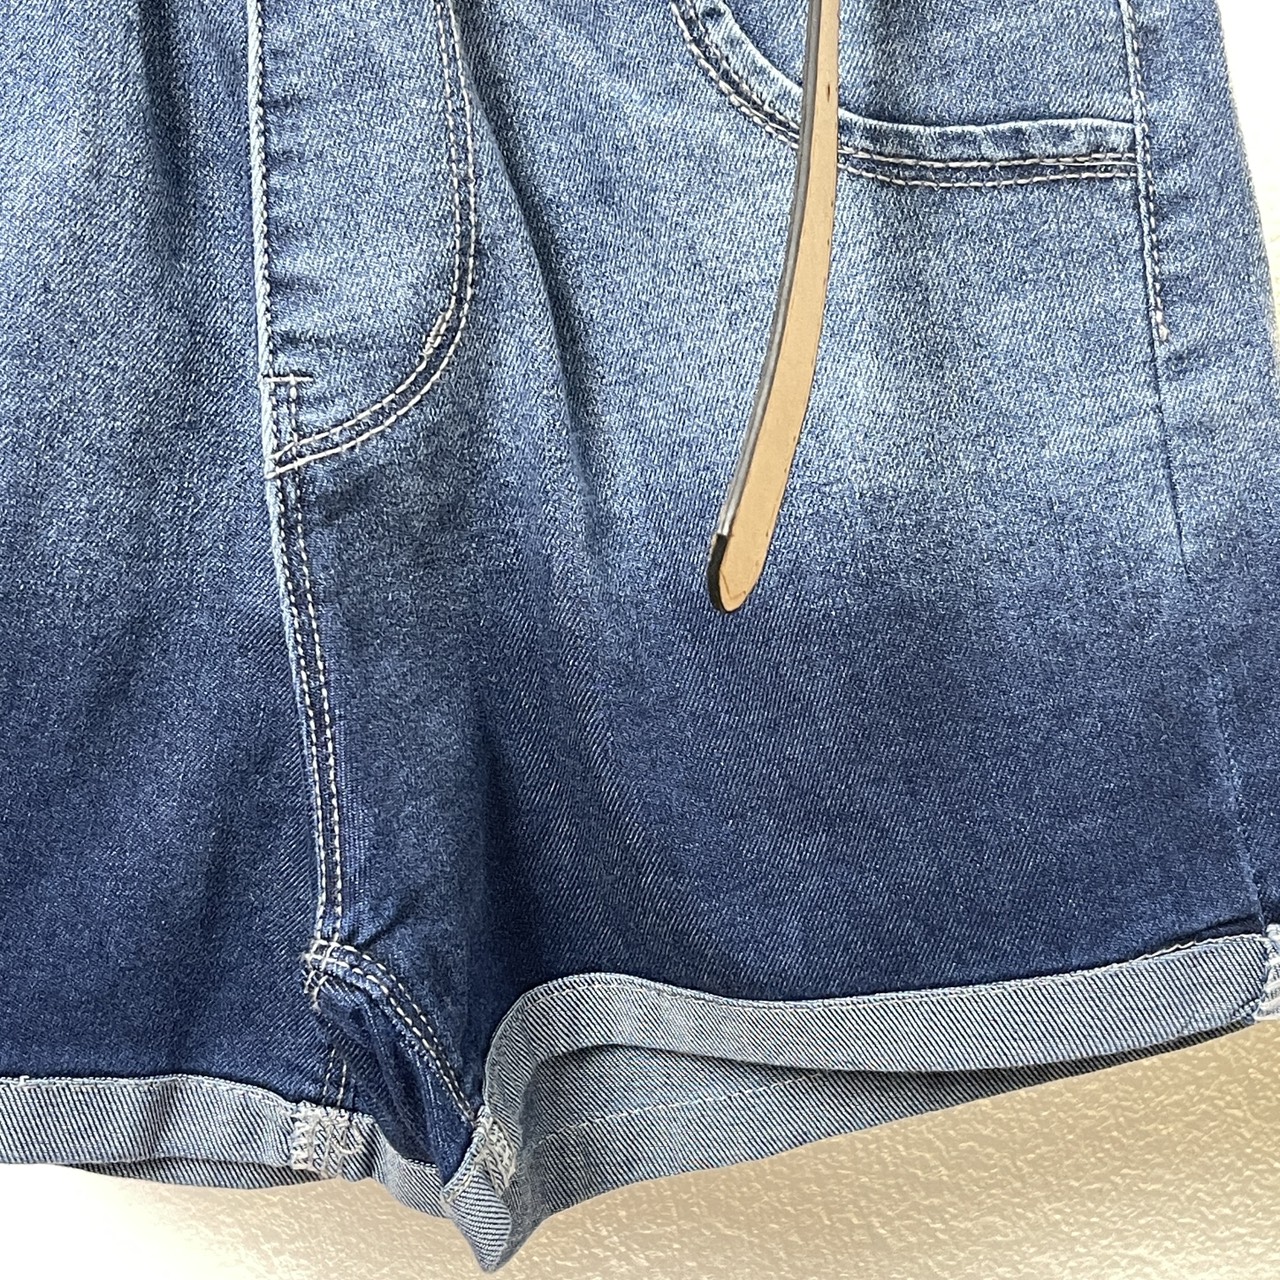 Quần đùi bé gái vải bò size đại, Short jean cho bé 6-12 tuổi chữ W co giãn mềm mại kiểu dáng thời trang